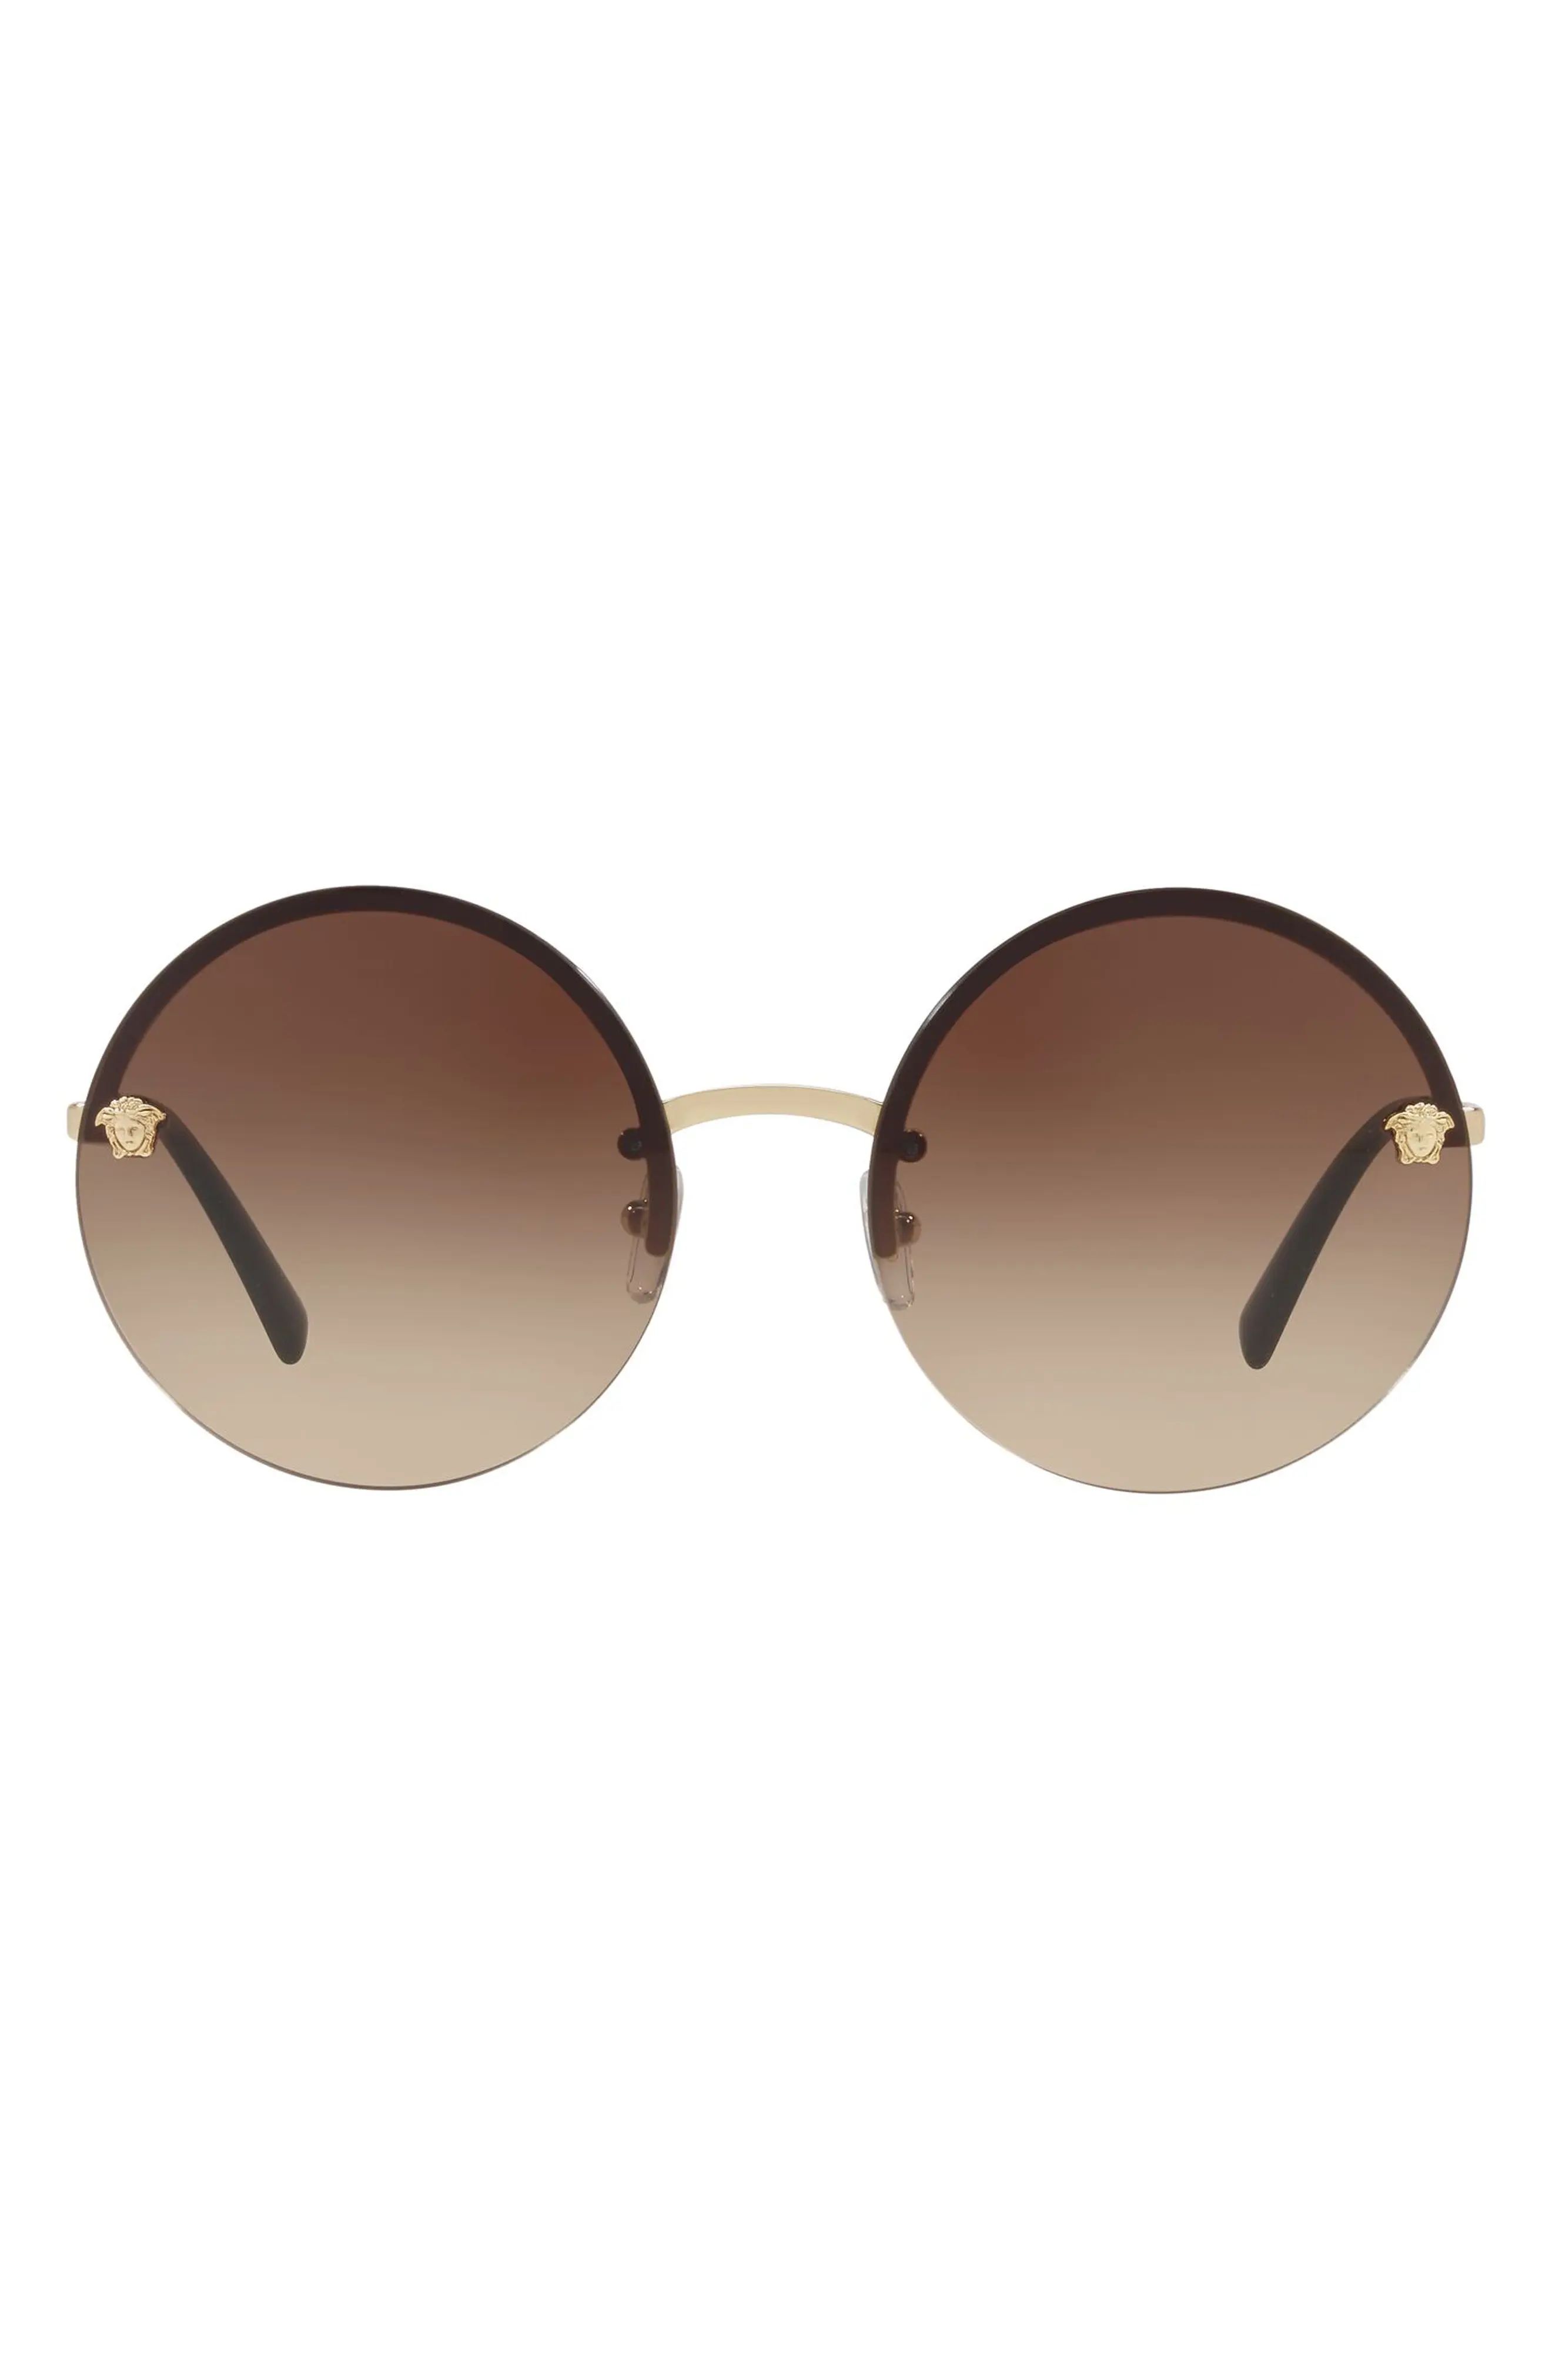 Women's Versace 59mm Gradient Round Sunglasses - Brown Gradient | Nordstrom